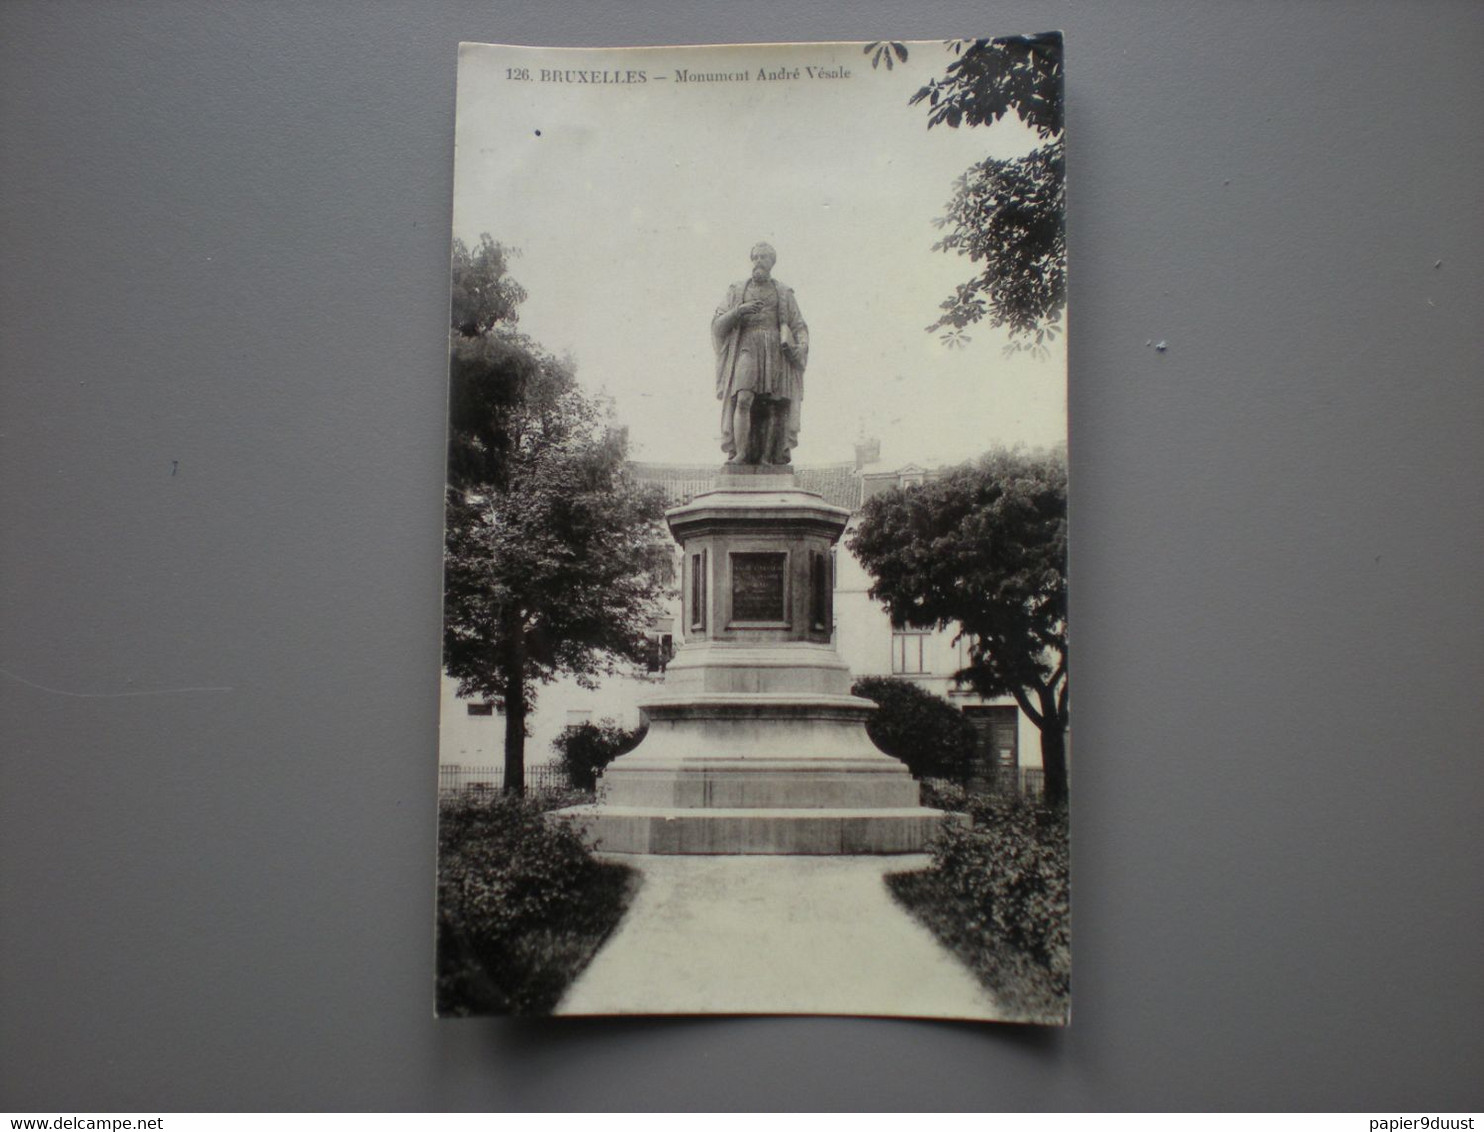 BRUXELLES - MONUMENT ANDRE VESALE - ED. GRAND BAZAR ANSPACH N° 126 - CARTE PHOTO - Non Classés